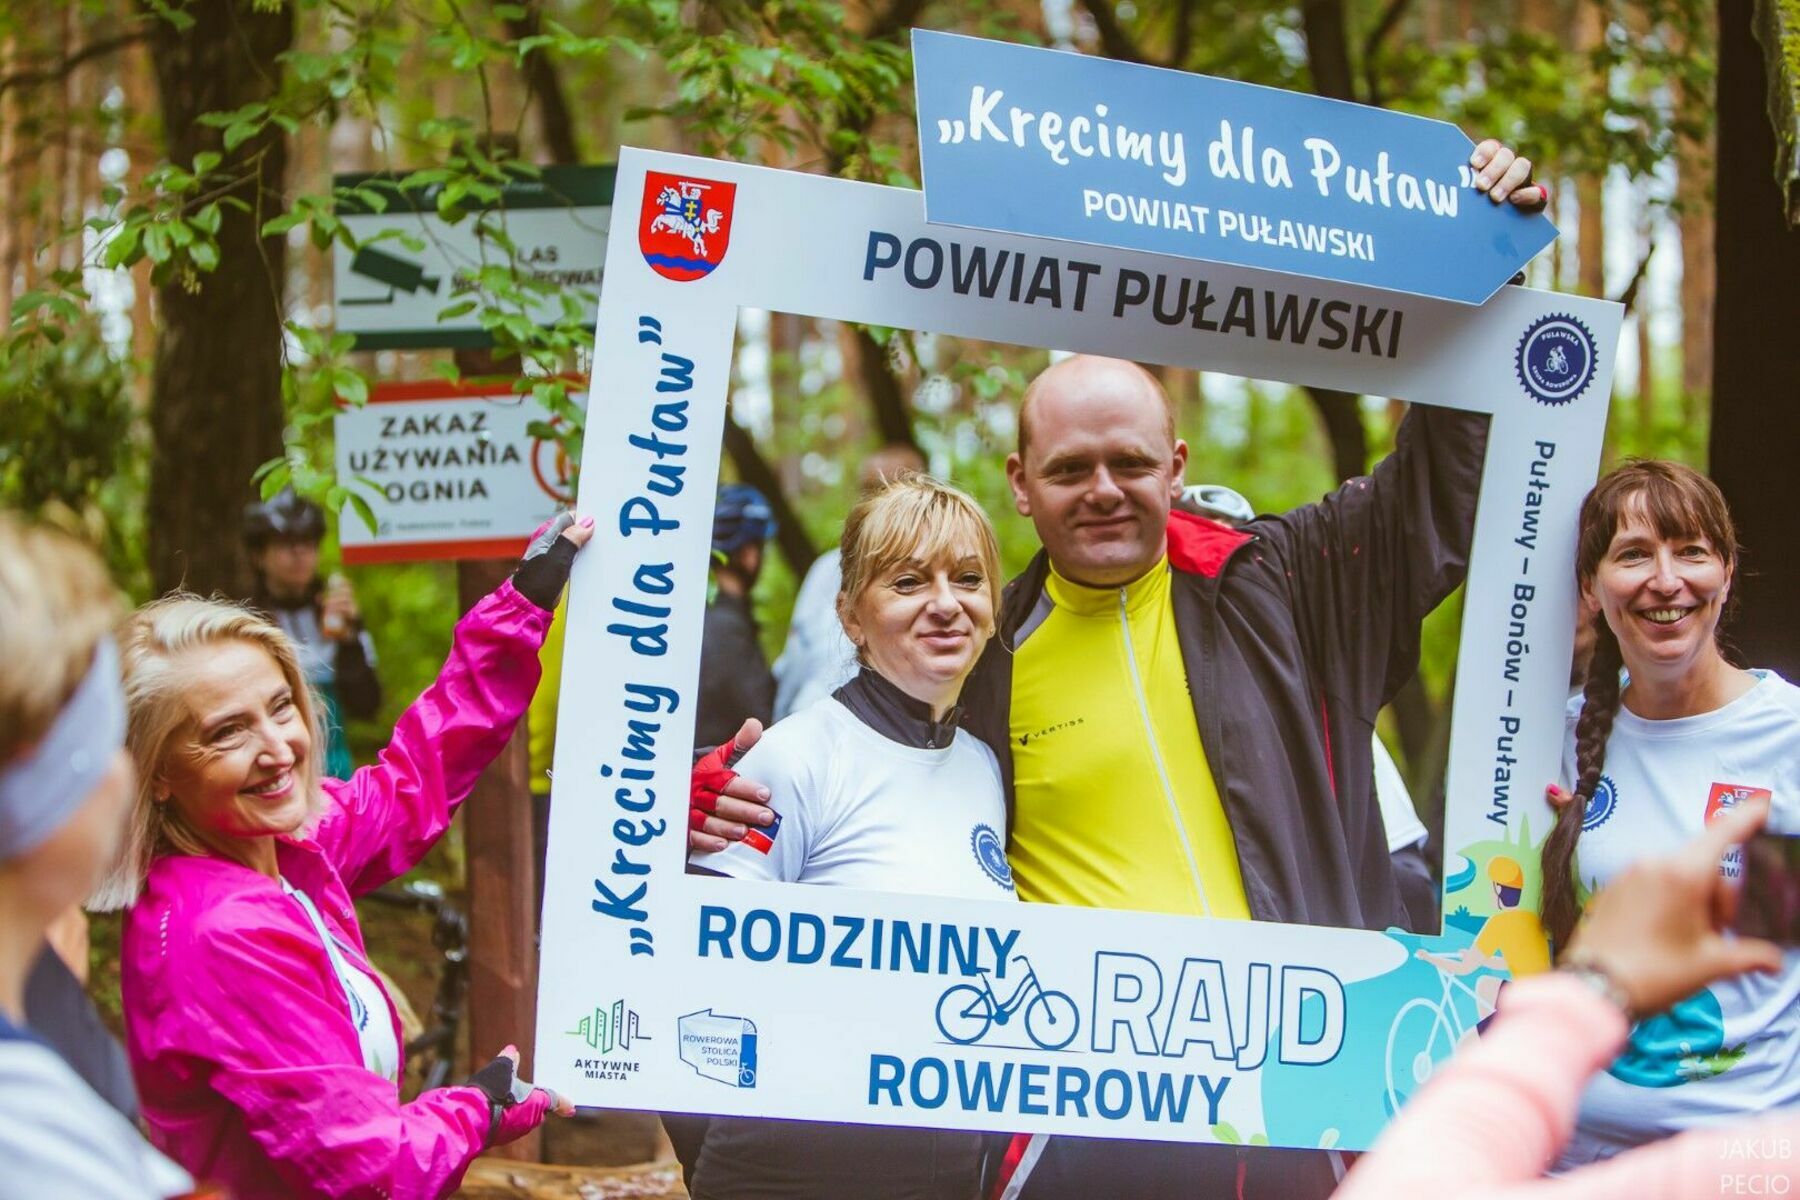 
                                                    Rodzinny rajd rowerowy Puławy - Bonów - Puławy w obiektywie Jakuba Pecio
                                                